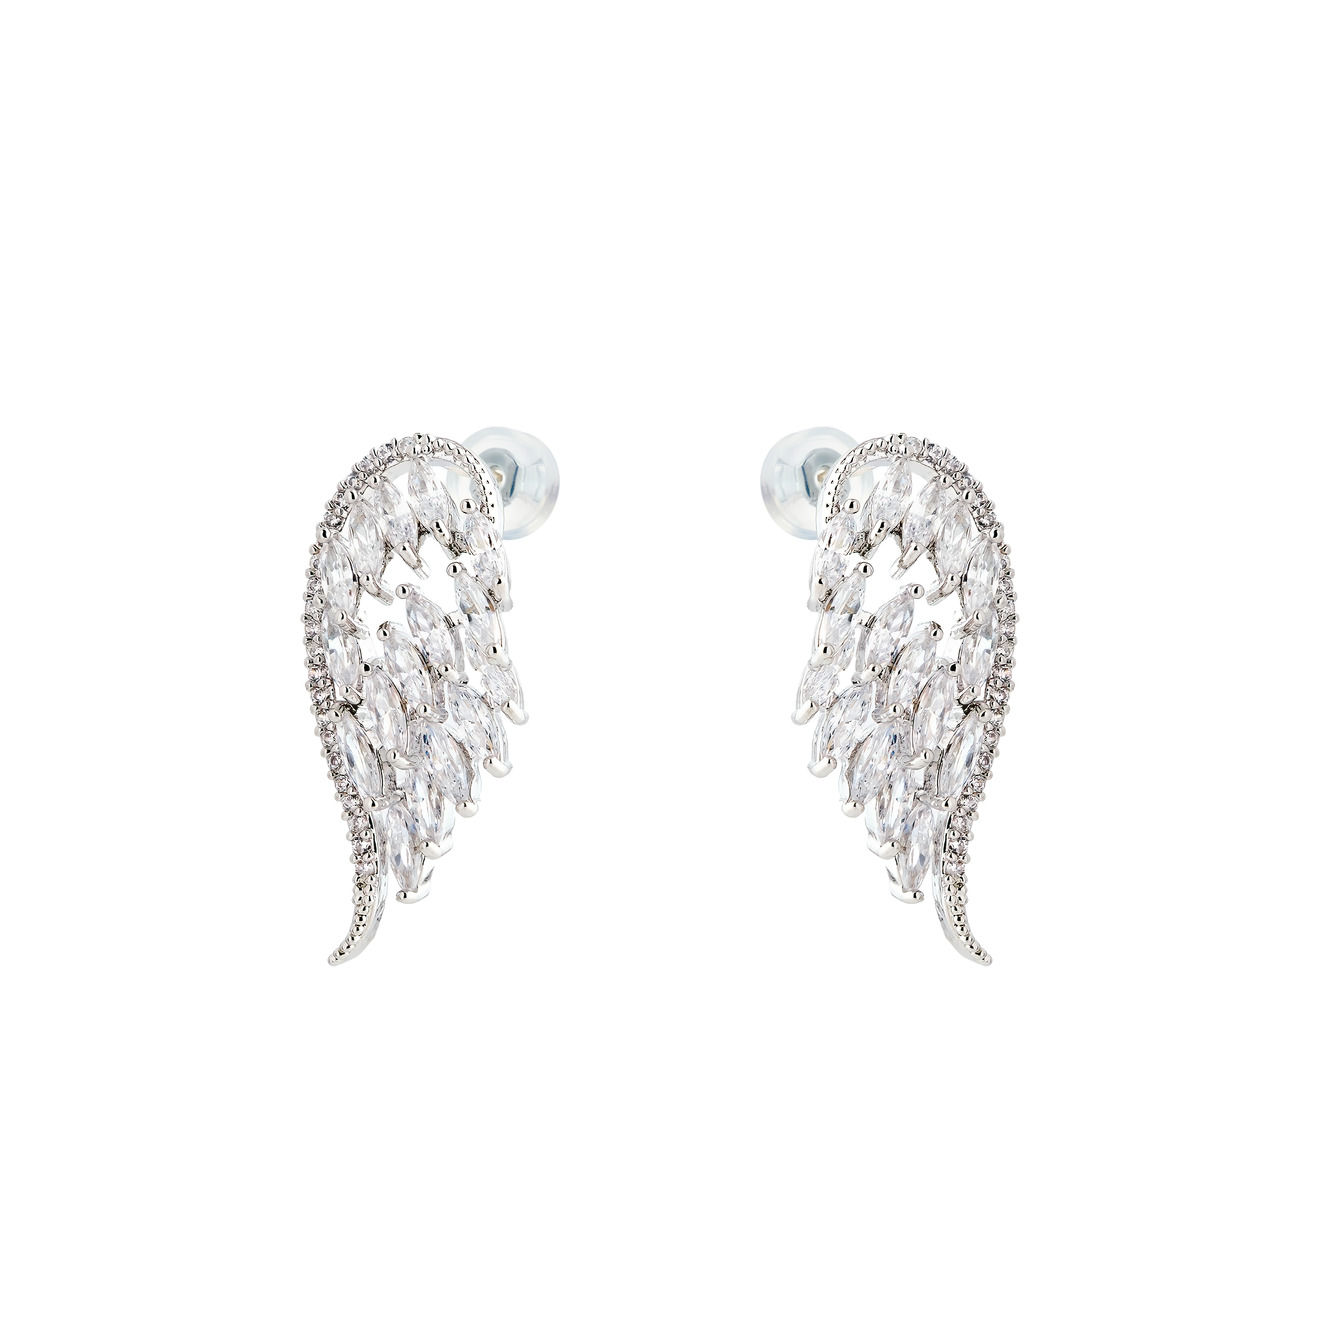 Herald Percy Серебристые маленькие серьги-крылья с кристаллами herald percy серебристые серьги крылья бабочки с кристаллами